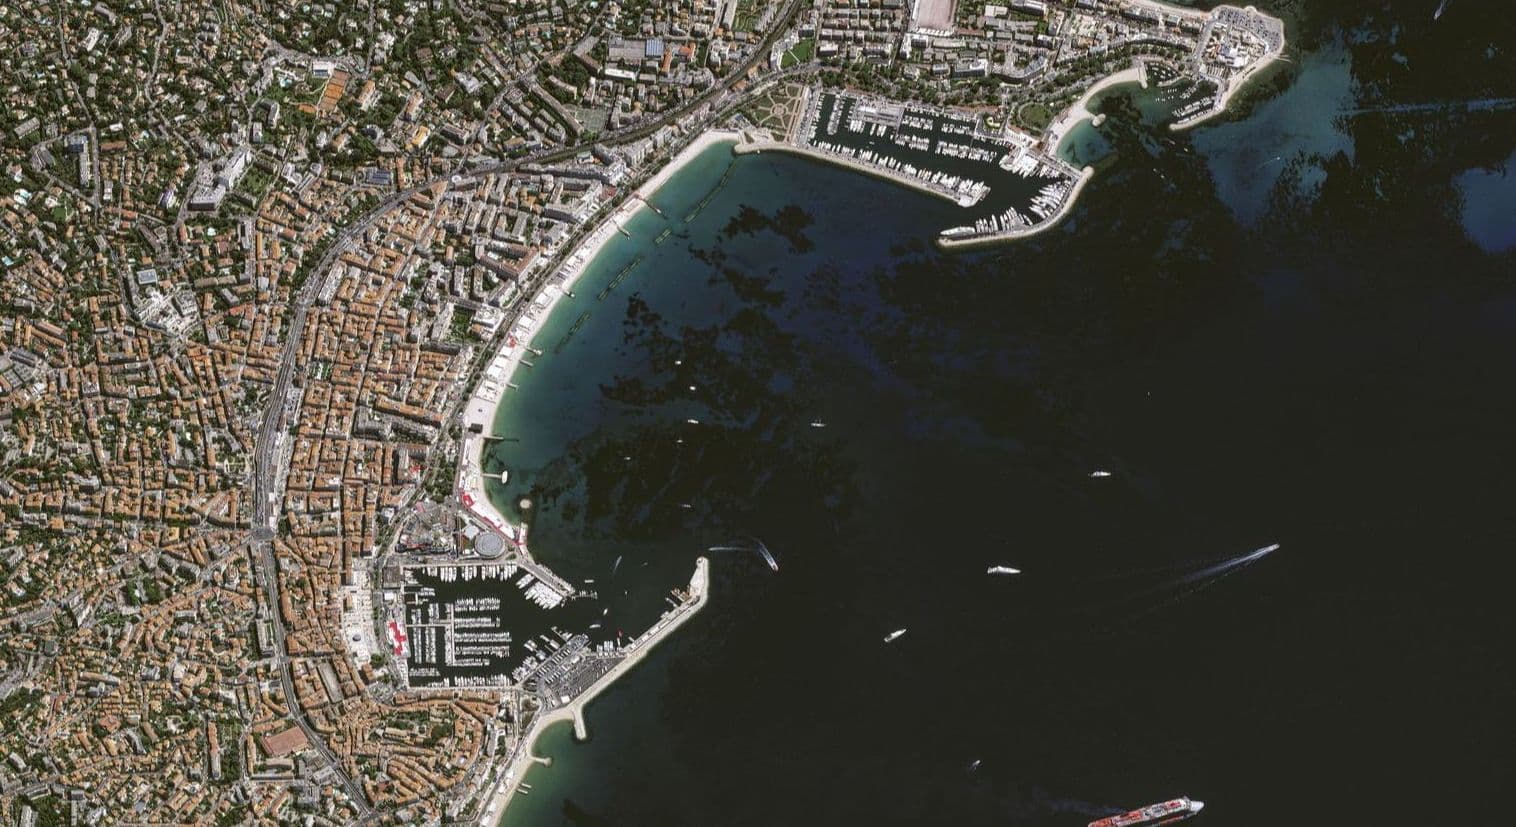 Pléiades Neo satellite image - 30cm resolution - Cannes, France